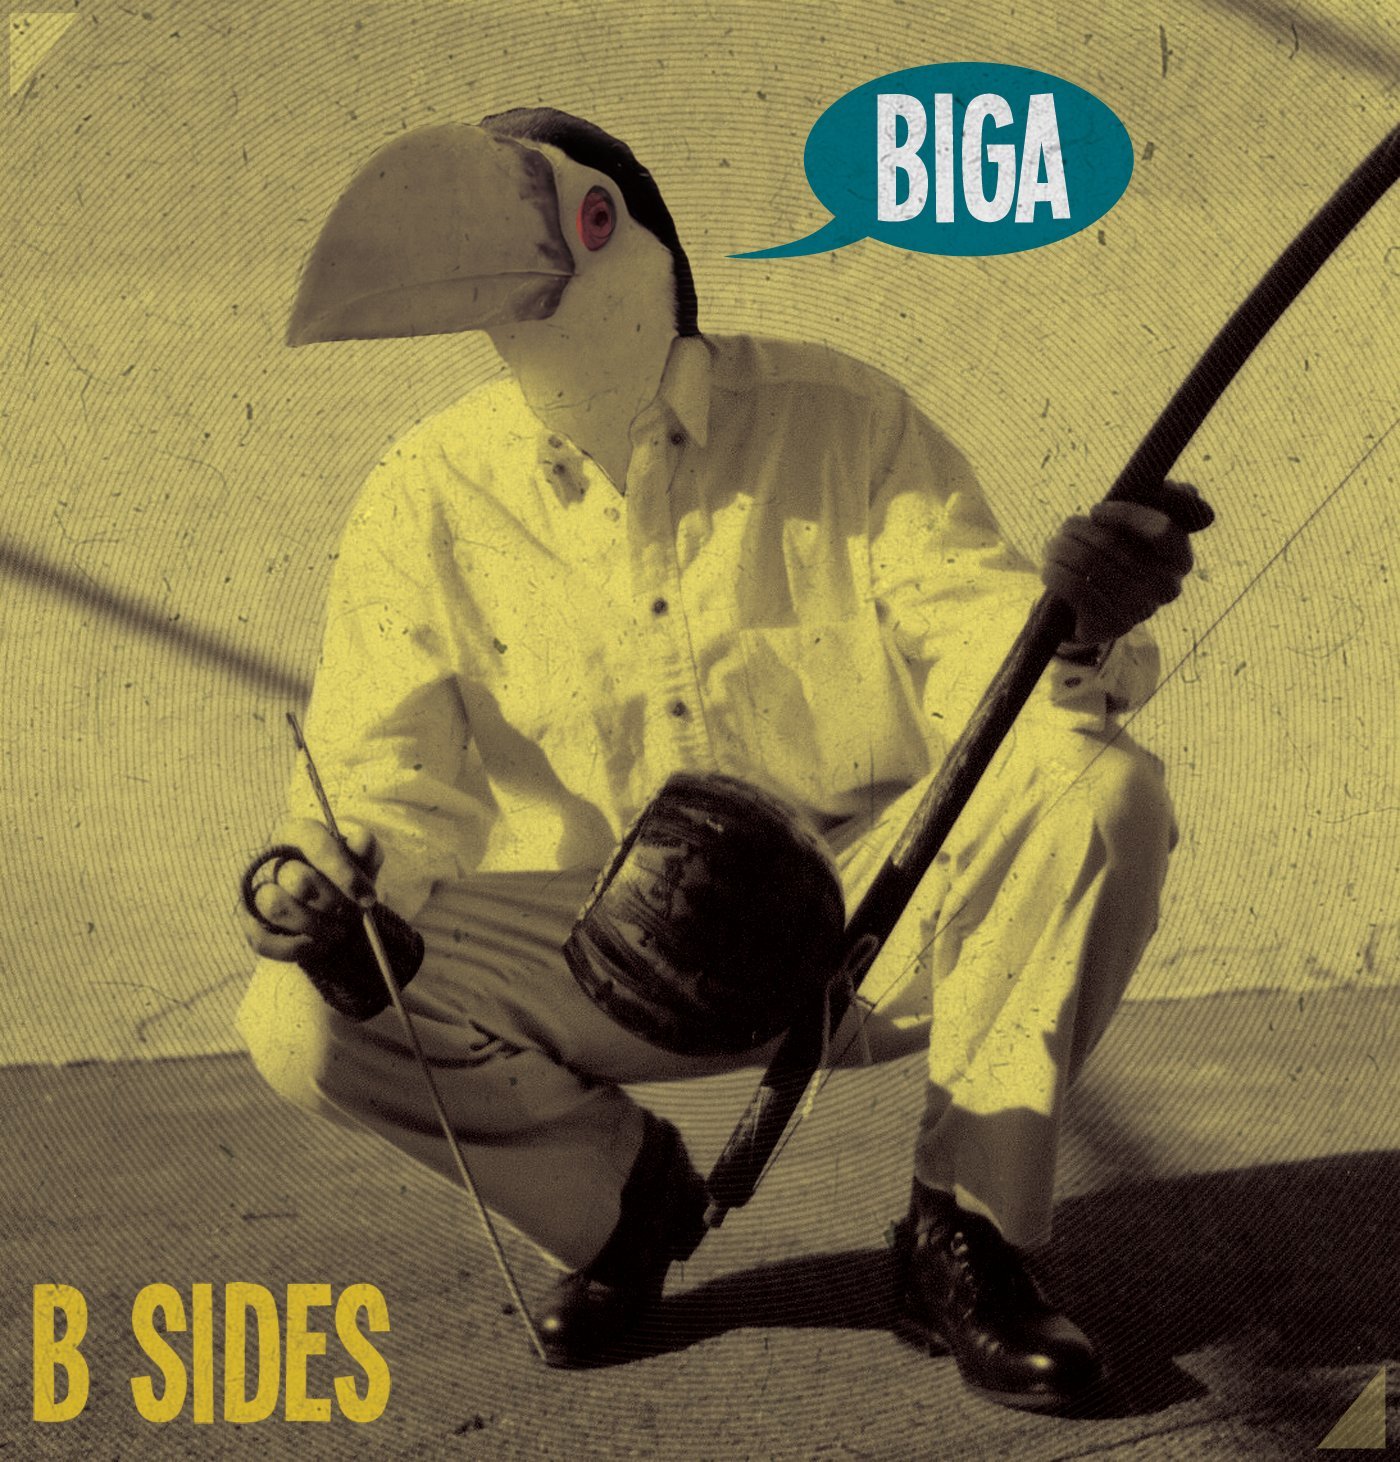 Free Download: Biga – B Sides